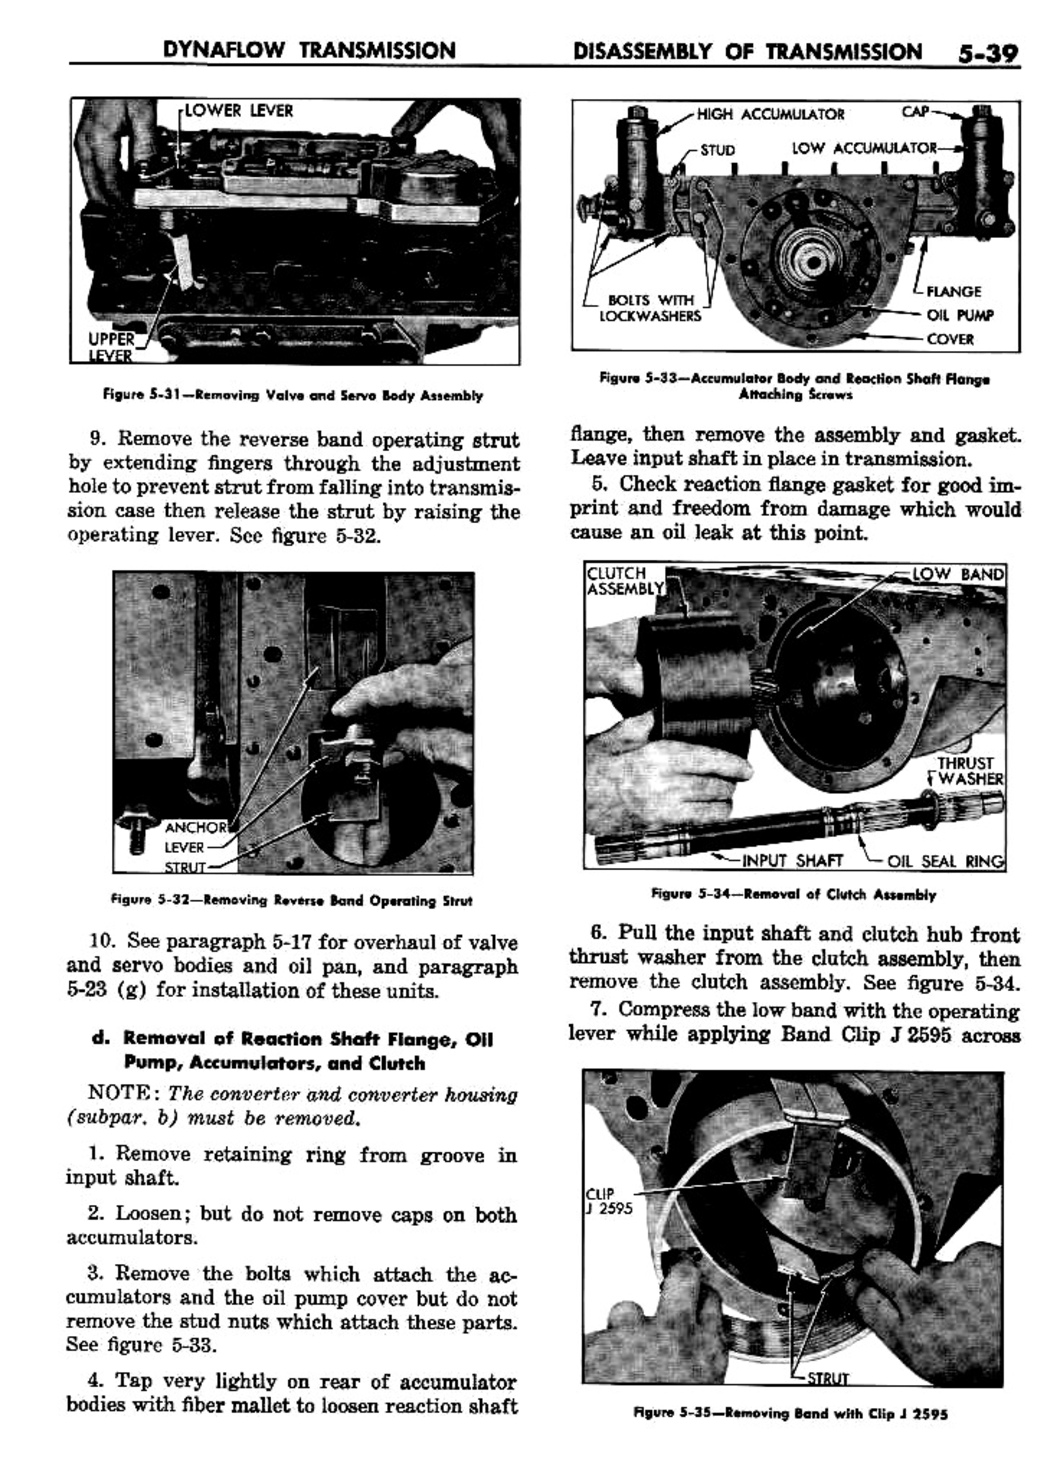 n_06 1957 Buick Shop Manual - Dynaflow-039-039.jpg